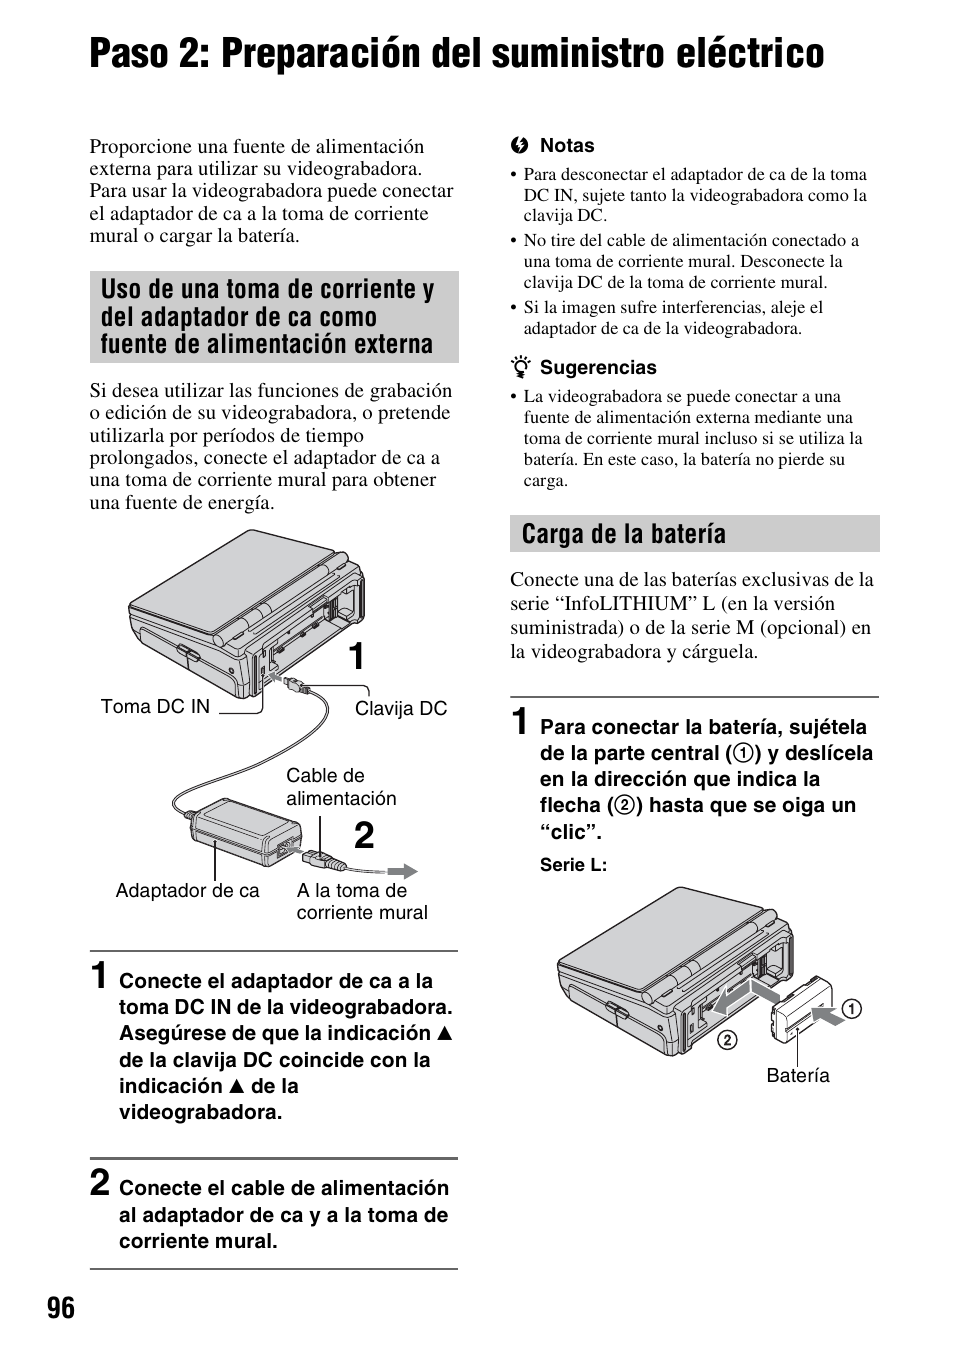 Paso 2: preparación del suministro eléctrico | Sony GV-HD700 User Manual | Page 96 / 108